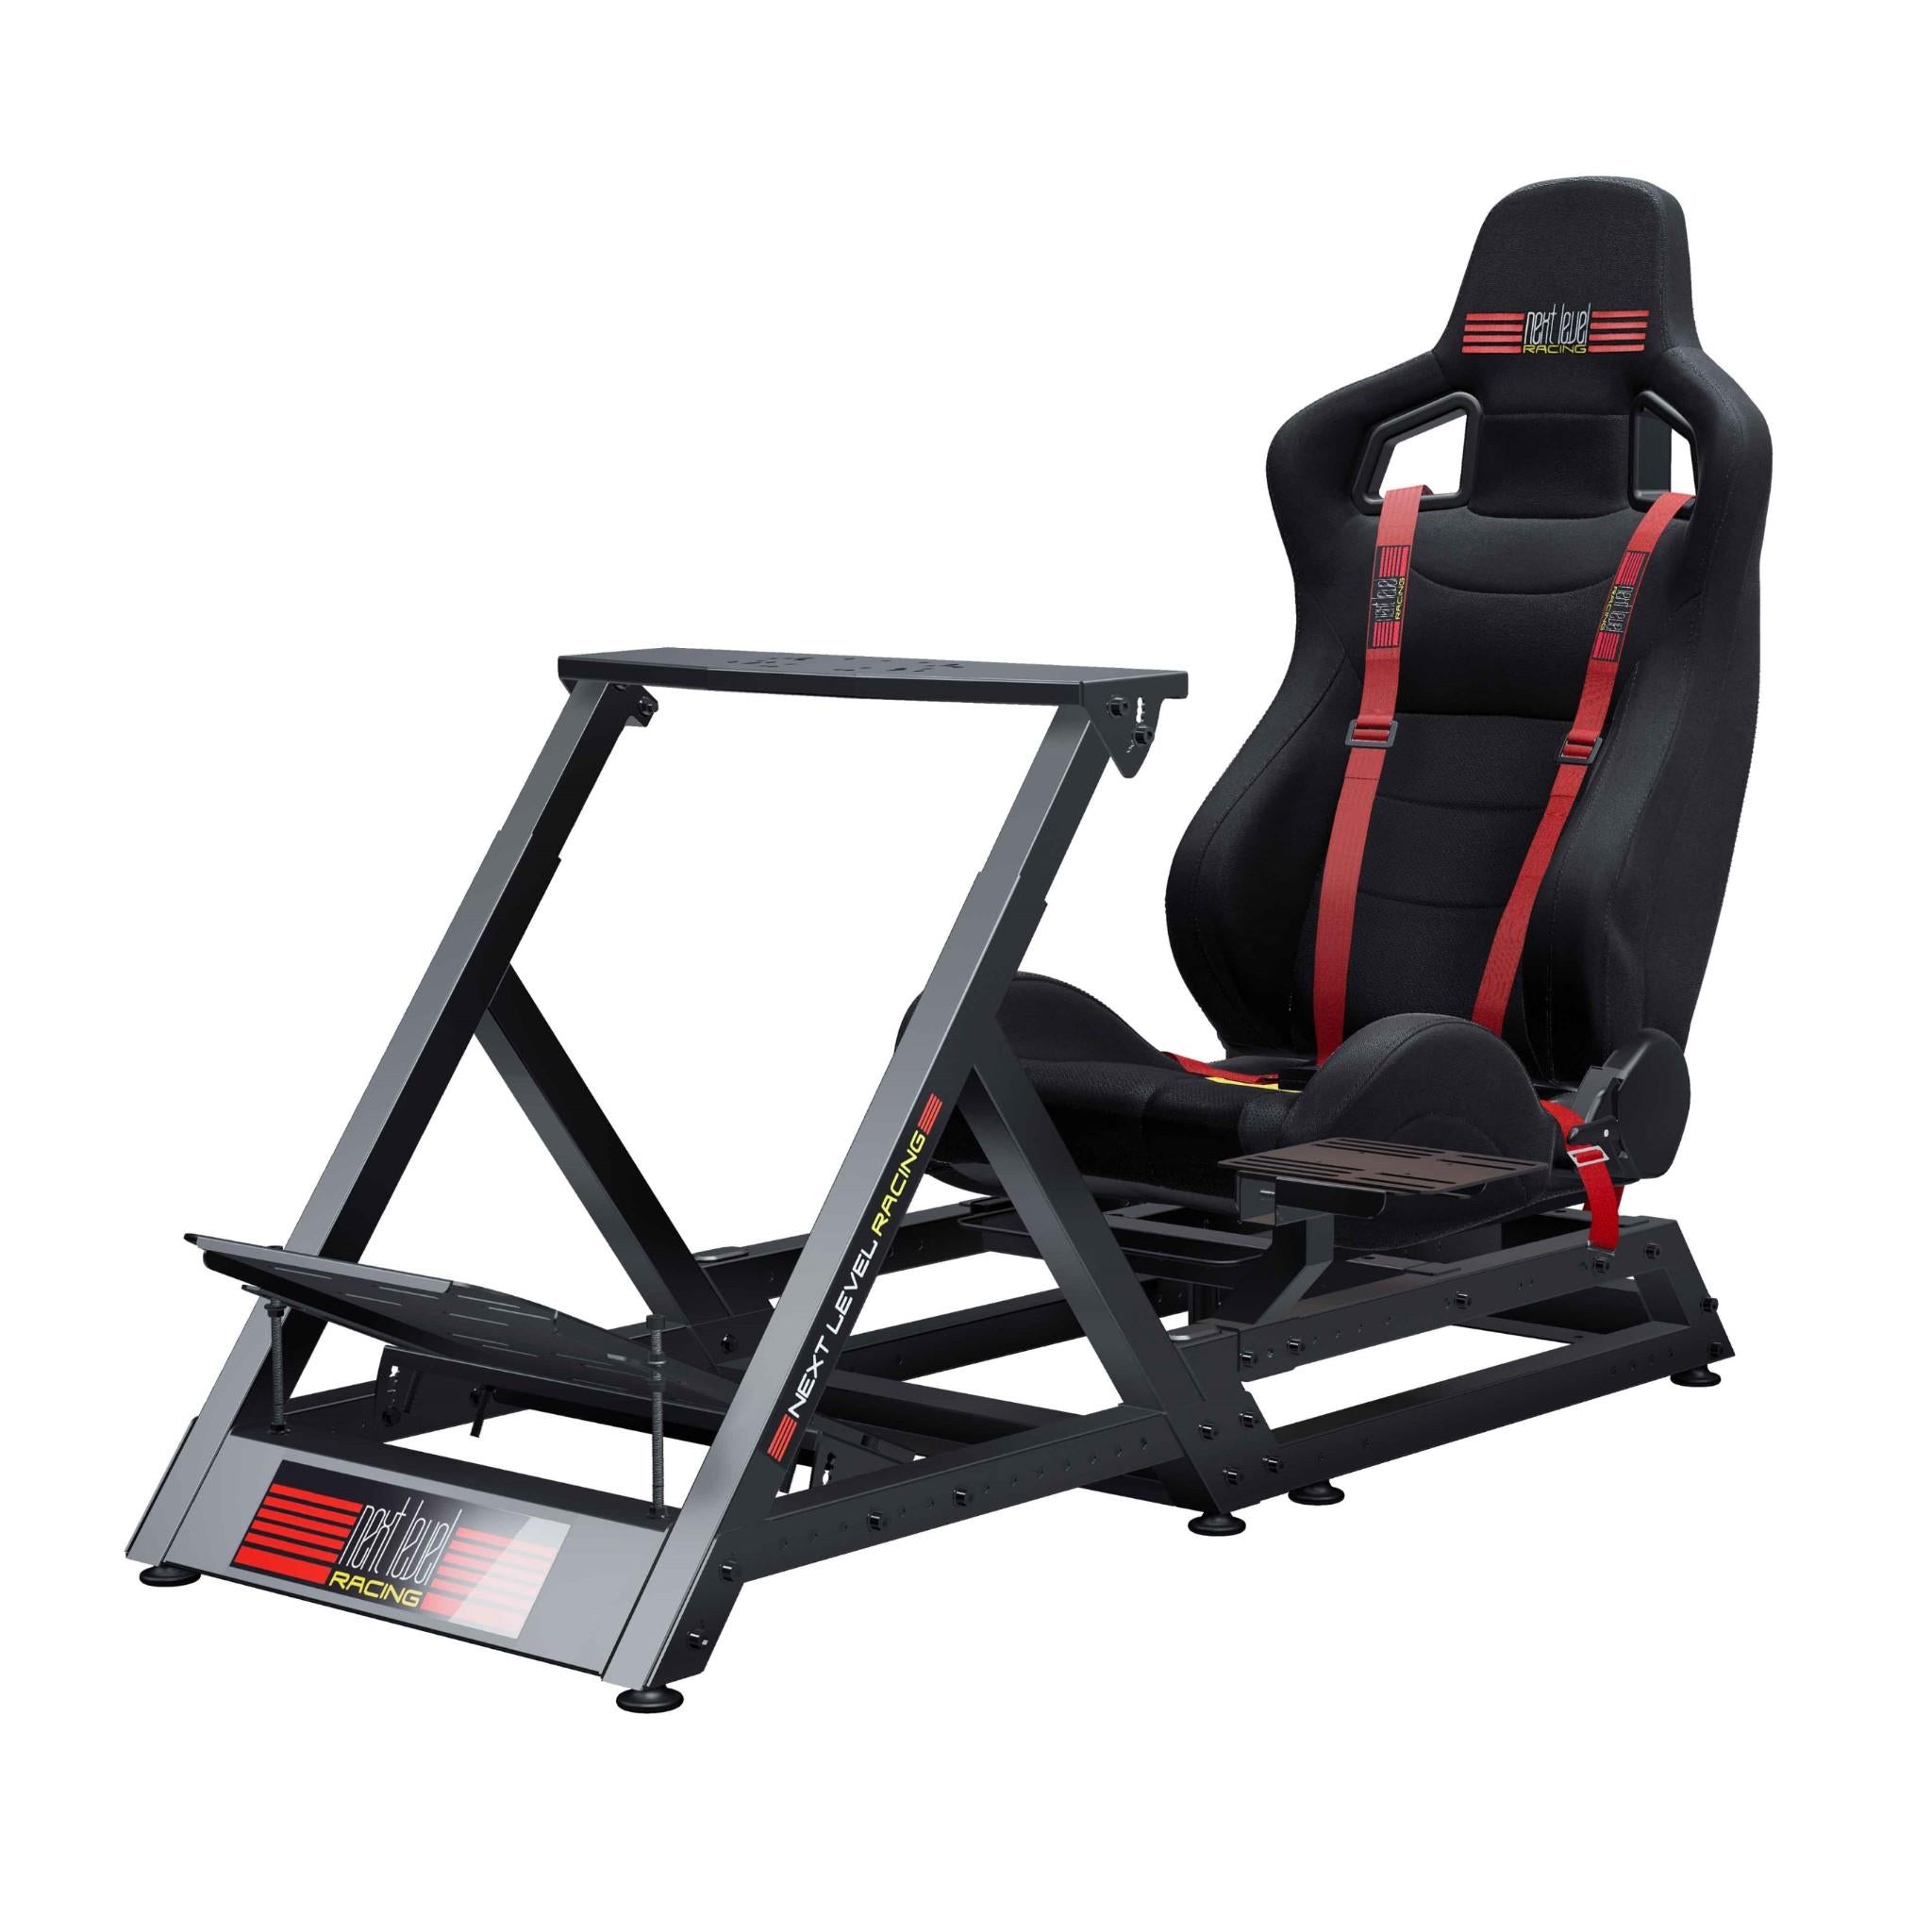 Playseat Evolution PRO Red Bull Racing Esports Chair - JB Hi-Fi